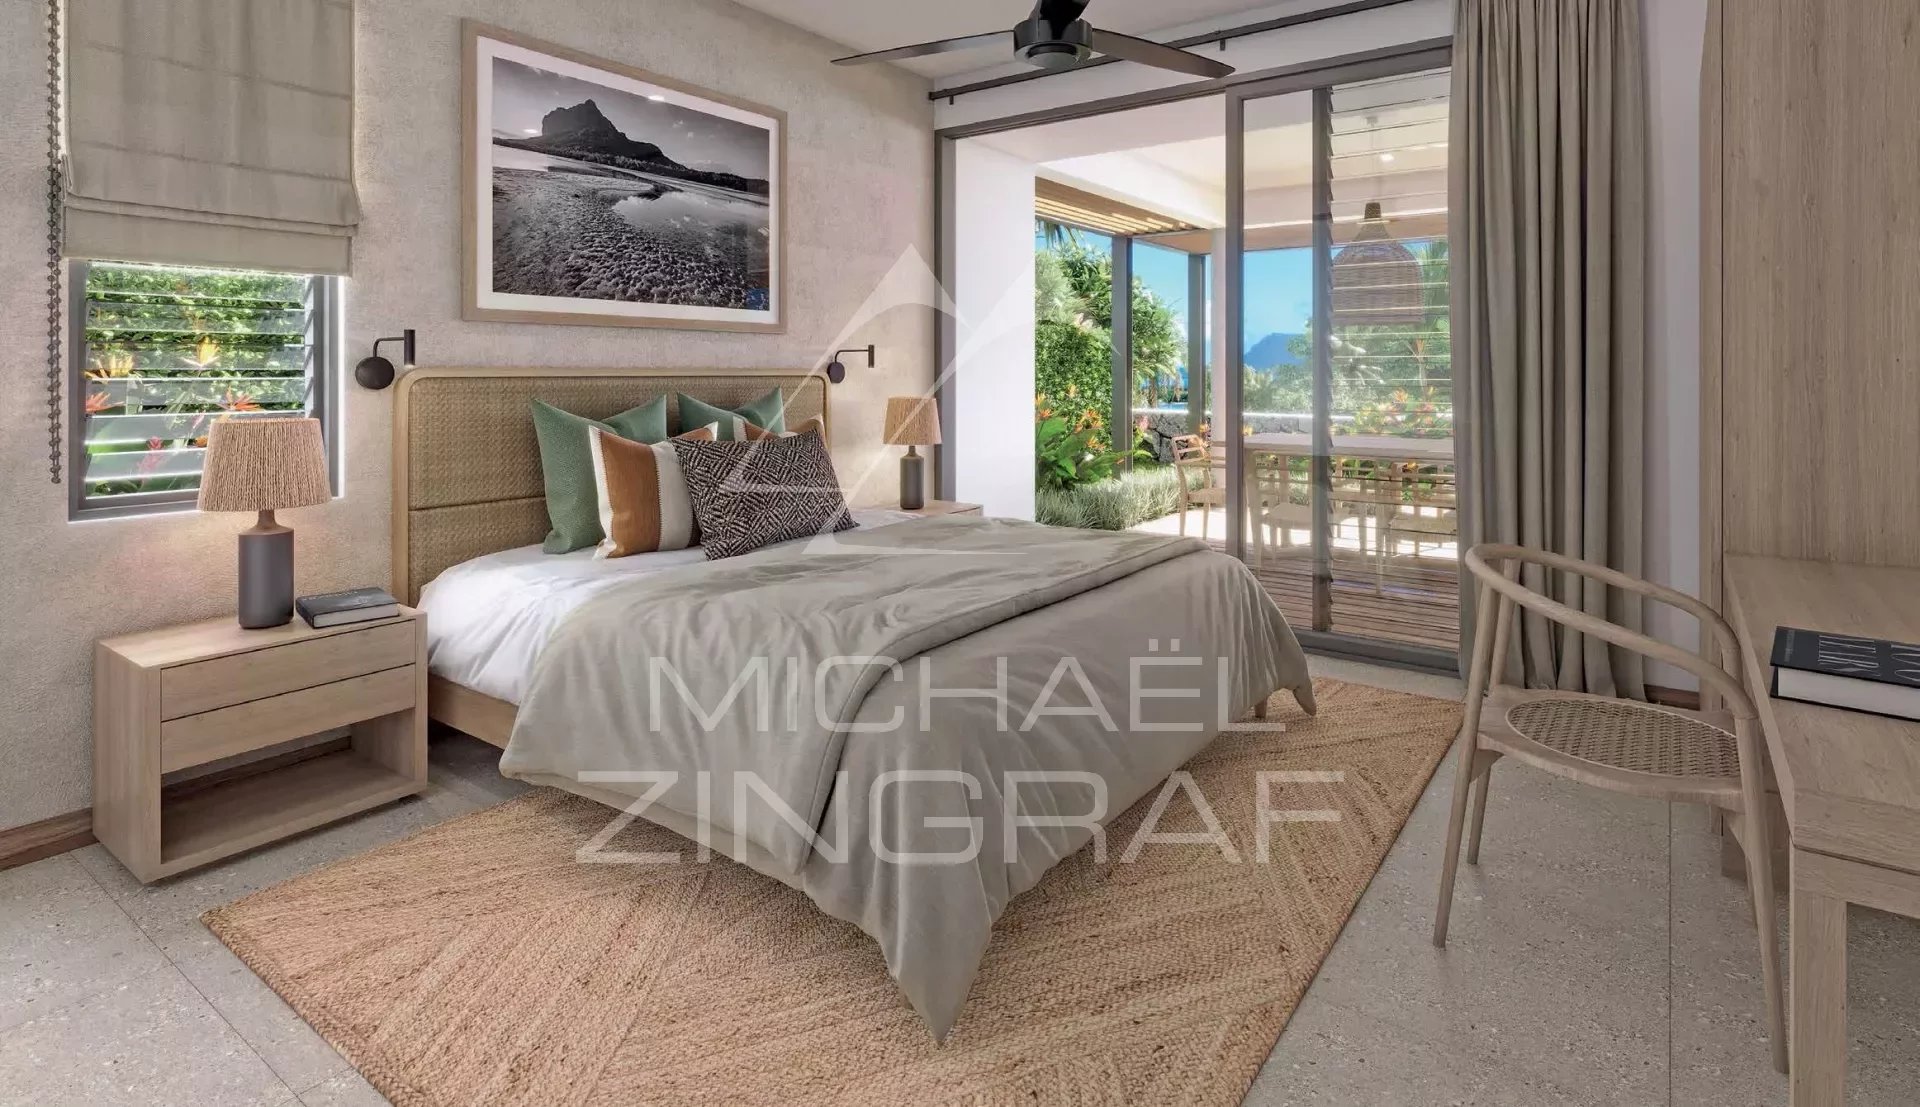 4 bedrooms villa with view on ocean